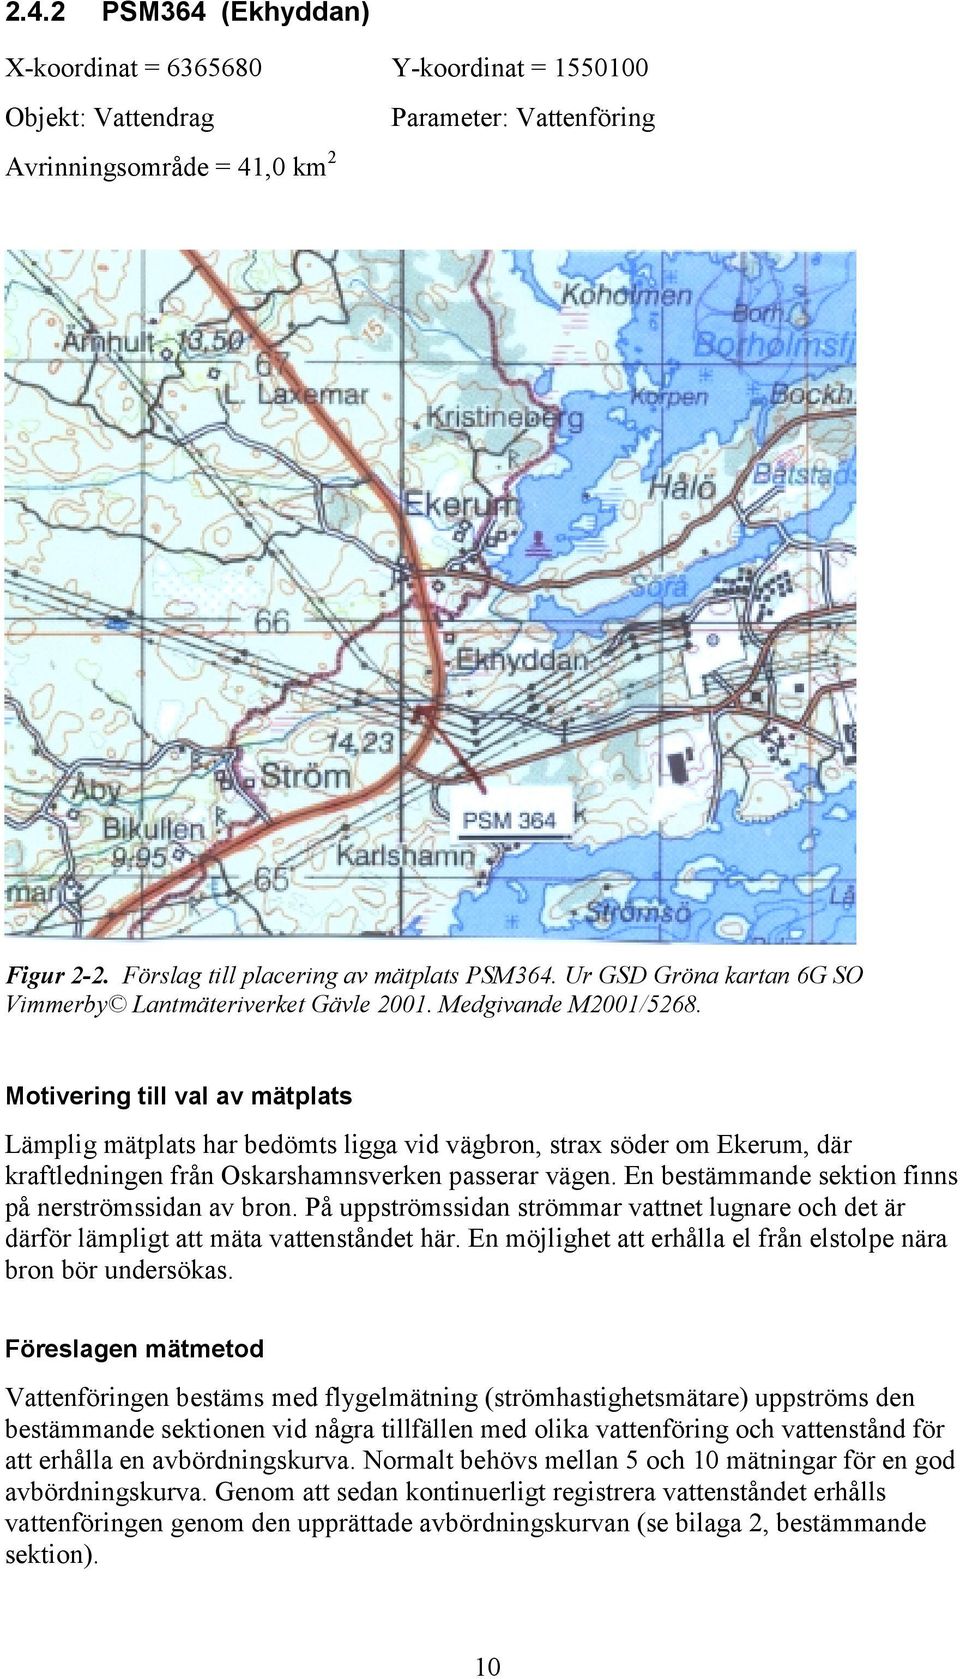 Motivering till val av mätplats Lämplig mätplats har bedömts ligga vid vägbron, strax söder om Ekerum, där kraftledningen från Oskarshamnsverken passerar vägen.